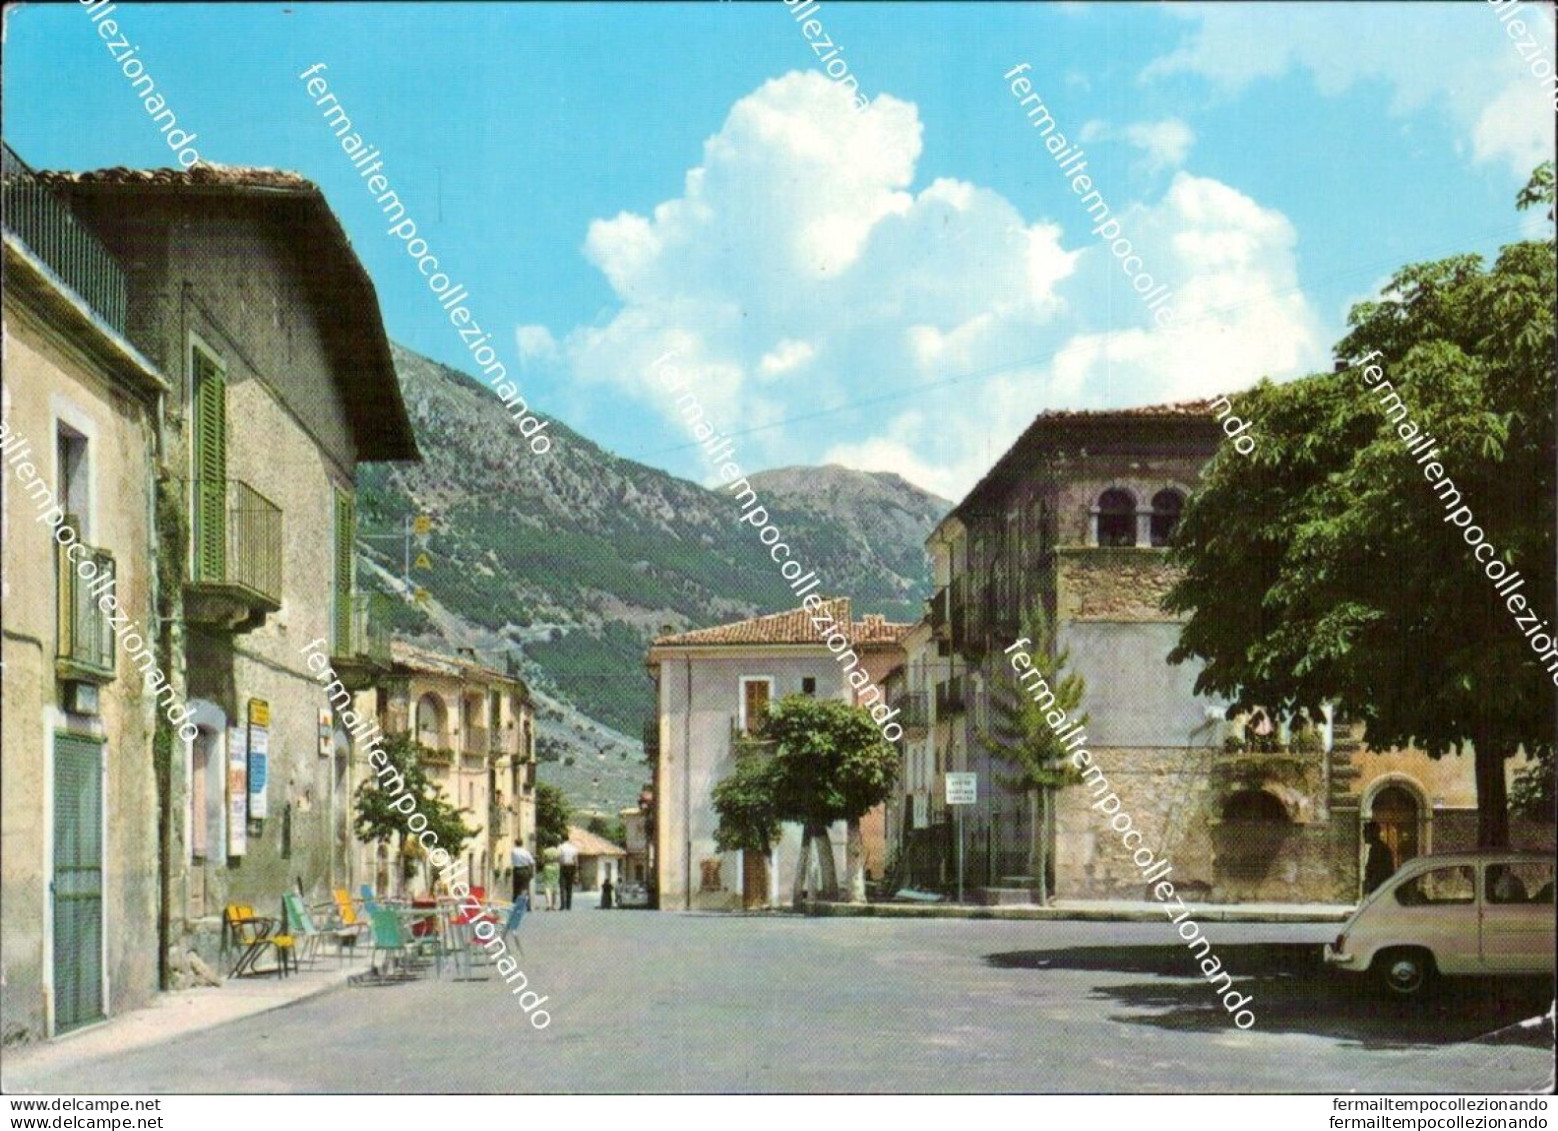 Cd632 Cartolina Campo Di Giove Piazza A.duval Provincia Di L'aquila Abruzzo - L'Aquila